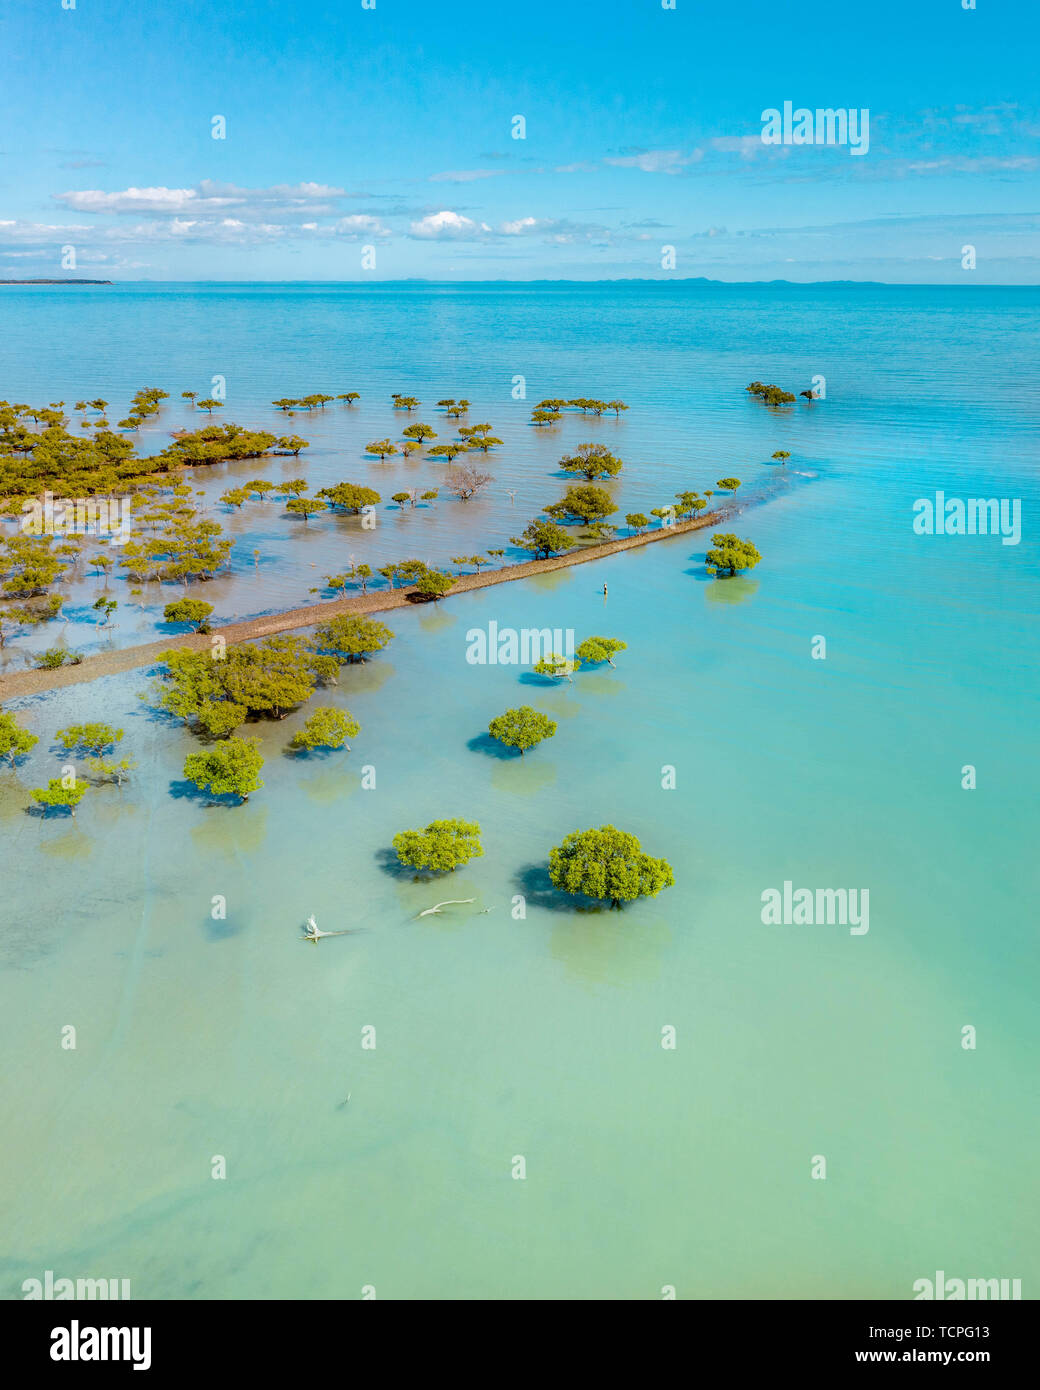 Antena de manglares tropicales paisaje con bello color turquesa, vegetación de árboles tropicales en Australia Foto de stock